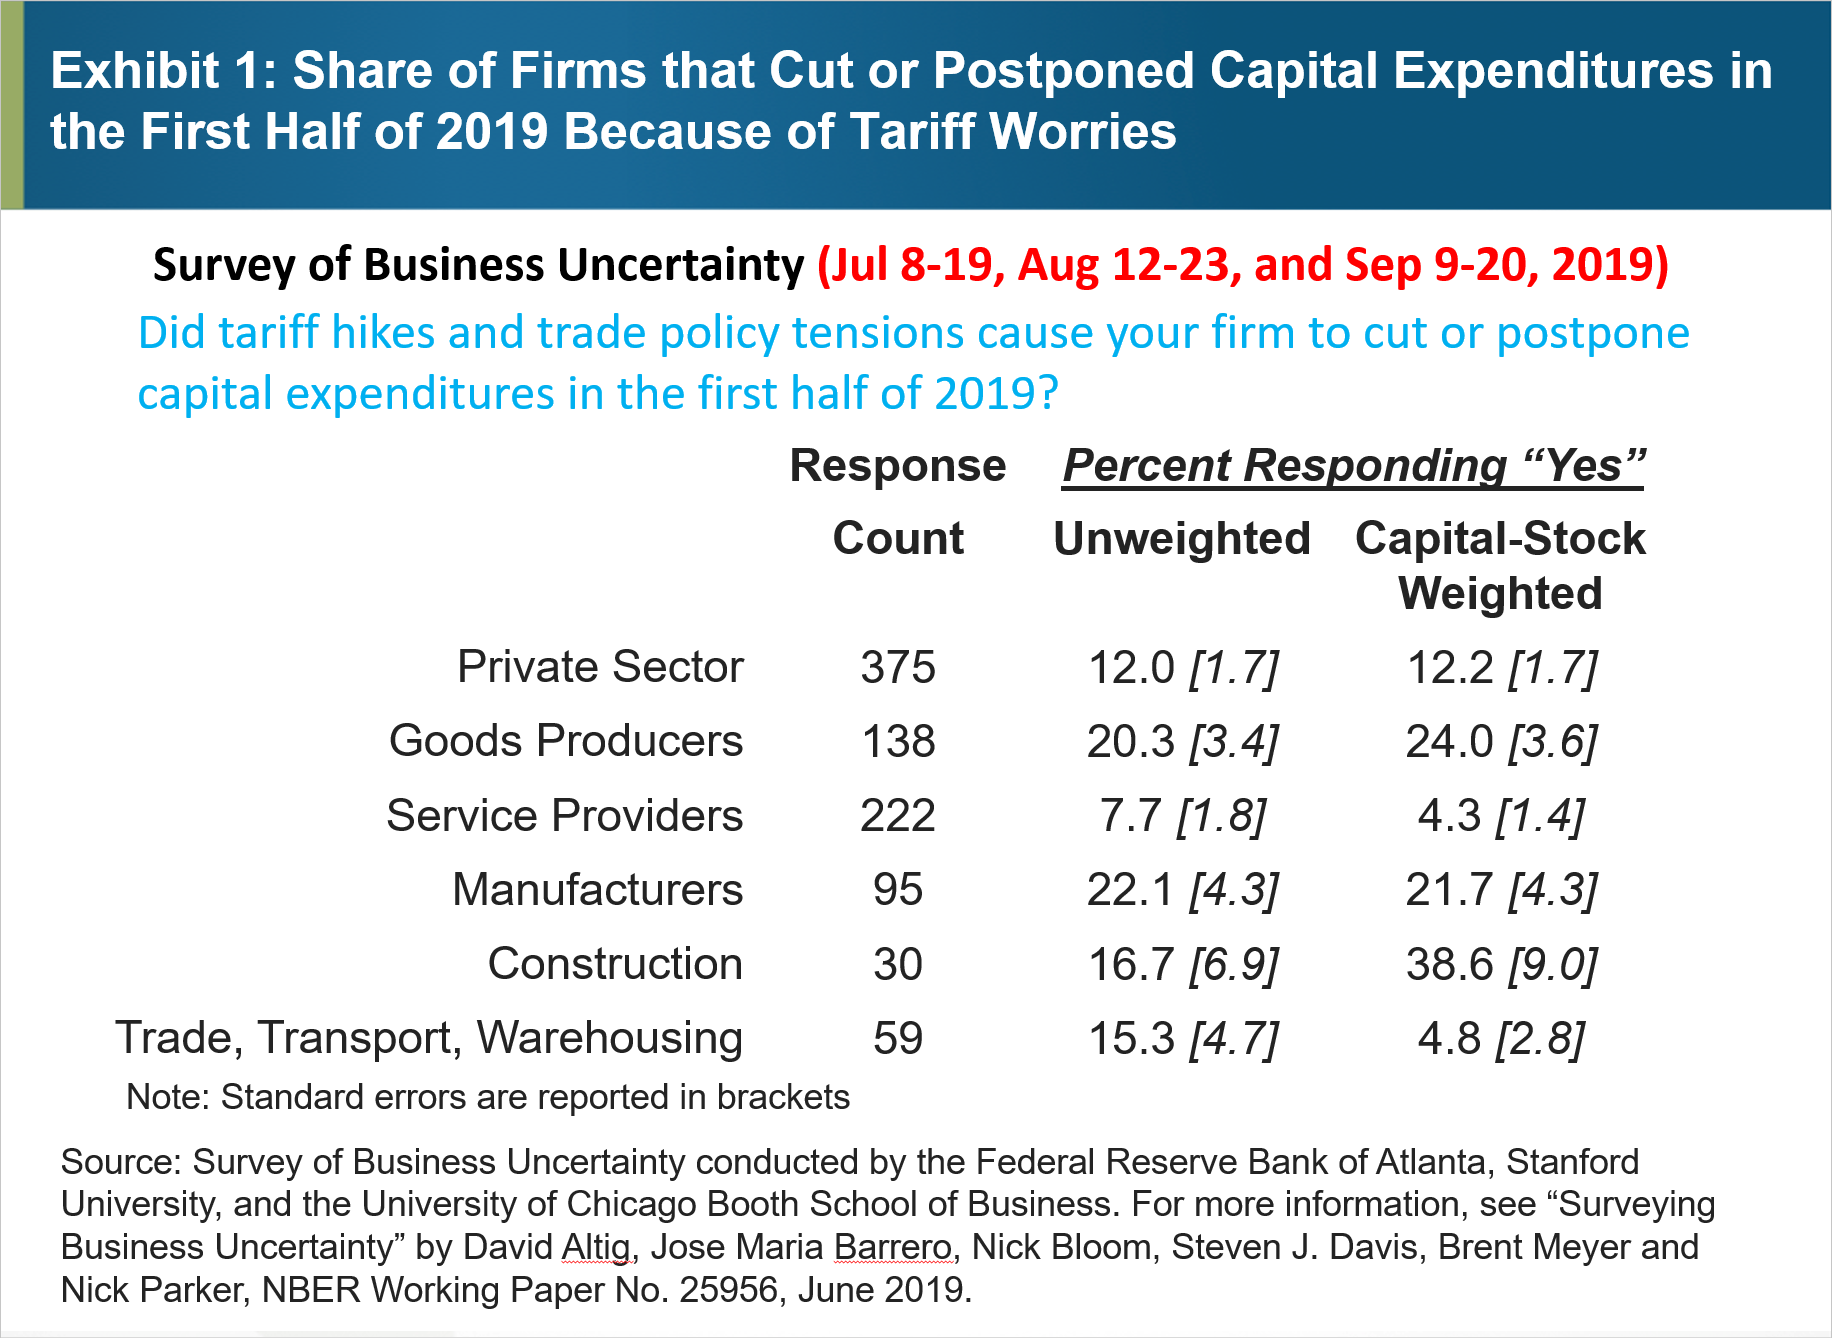 Allegato 1: Quota di imprese che hanno tagliato o posticipato le spese in conto capitale nella prima metà del 2019 a causa di preoccupazioni tariffarie